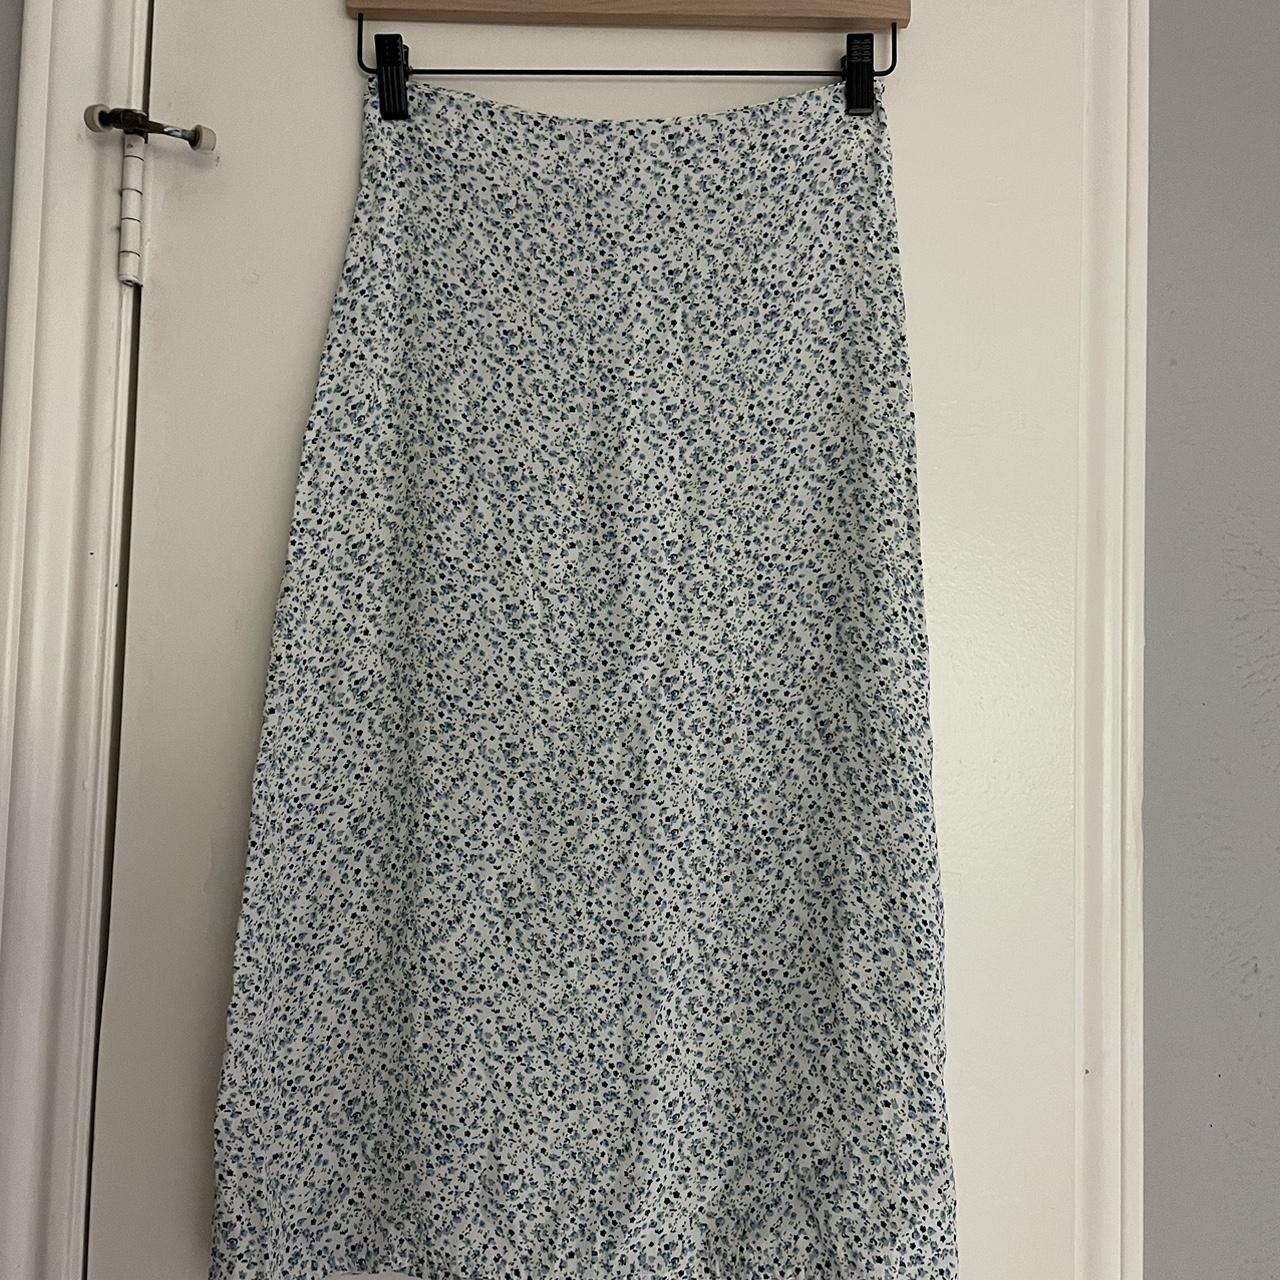 Brandy Melville Women's Blue and White Skirt (2)